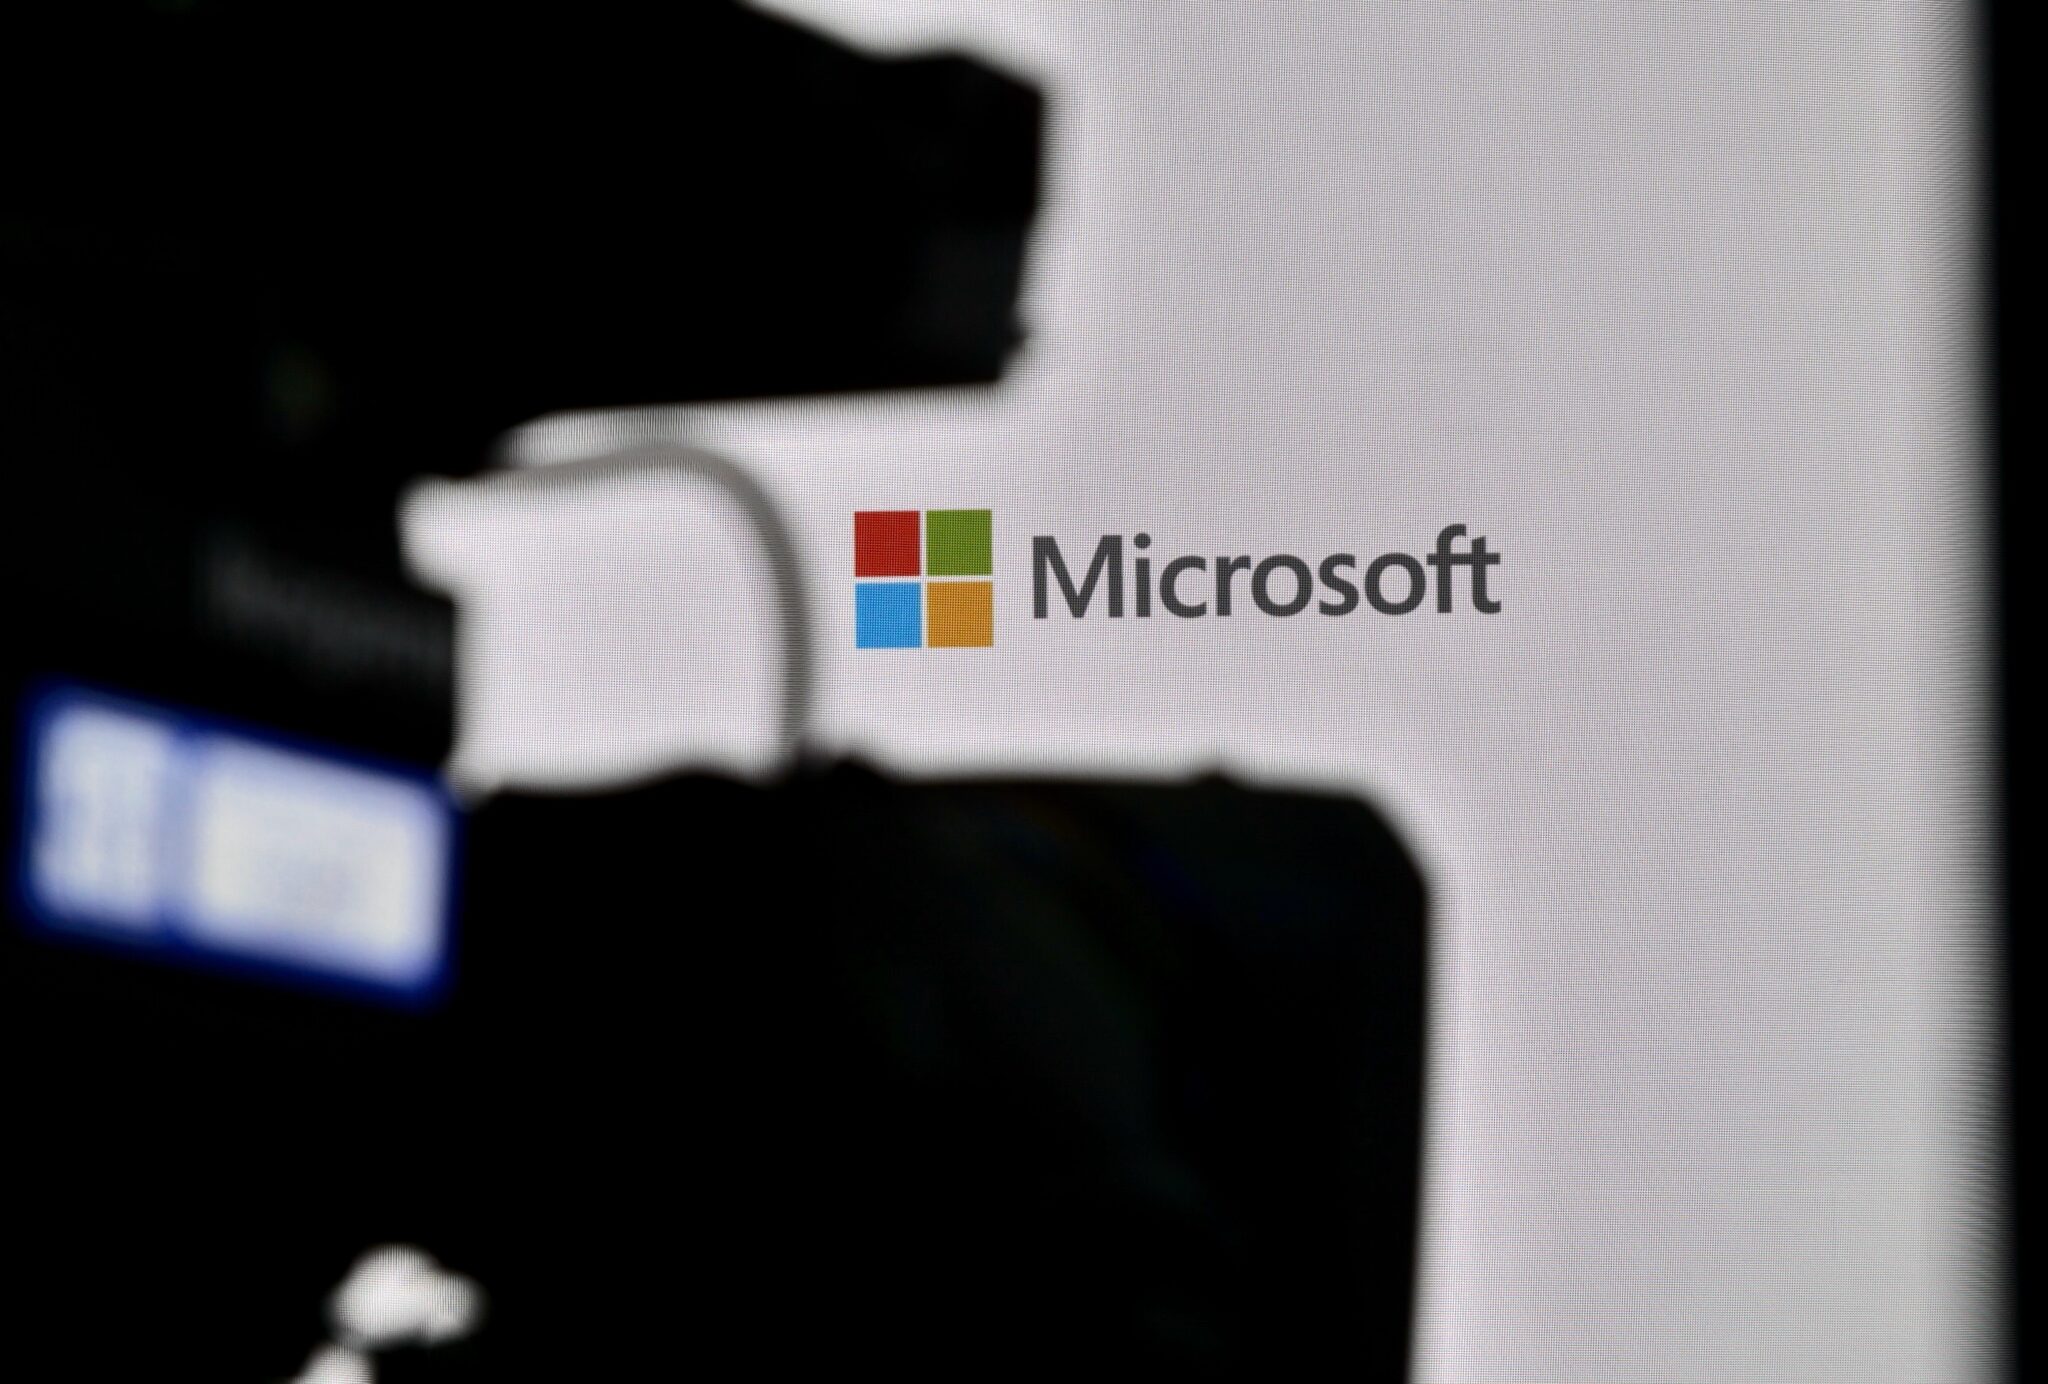 Microsoft forsøgte at lukke munden på sårbarheden i DALL-E, siger en embedsmand fra virksomheden.